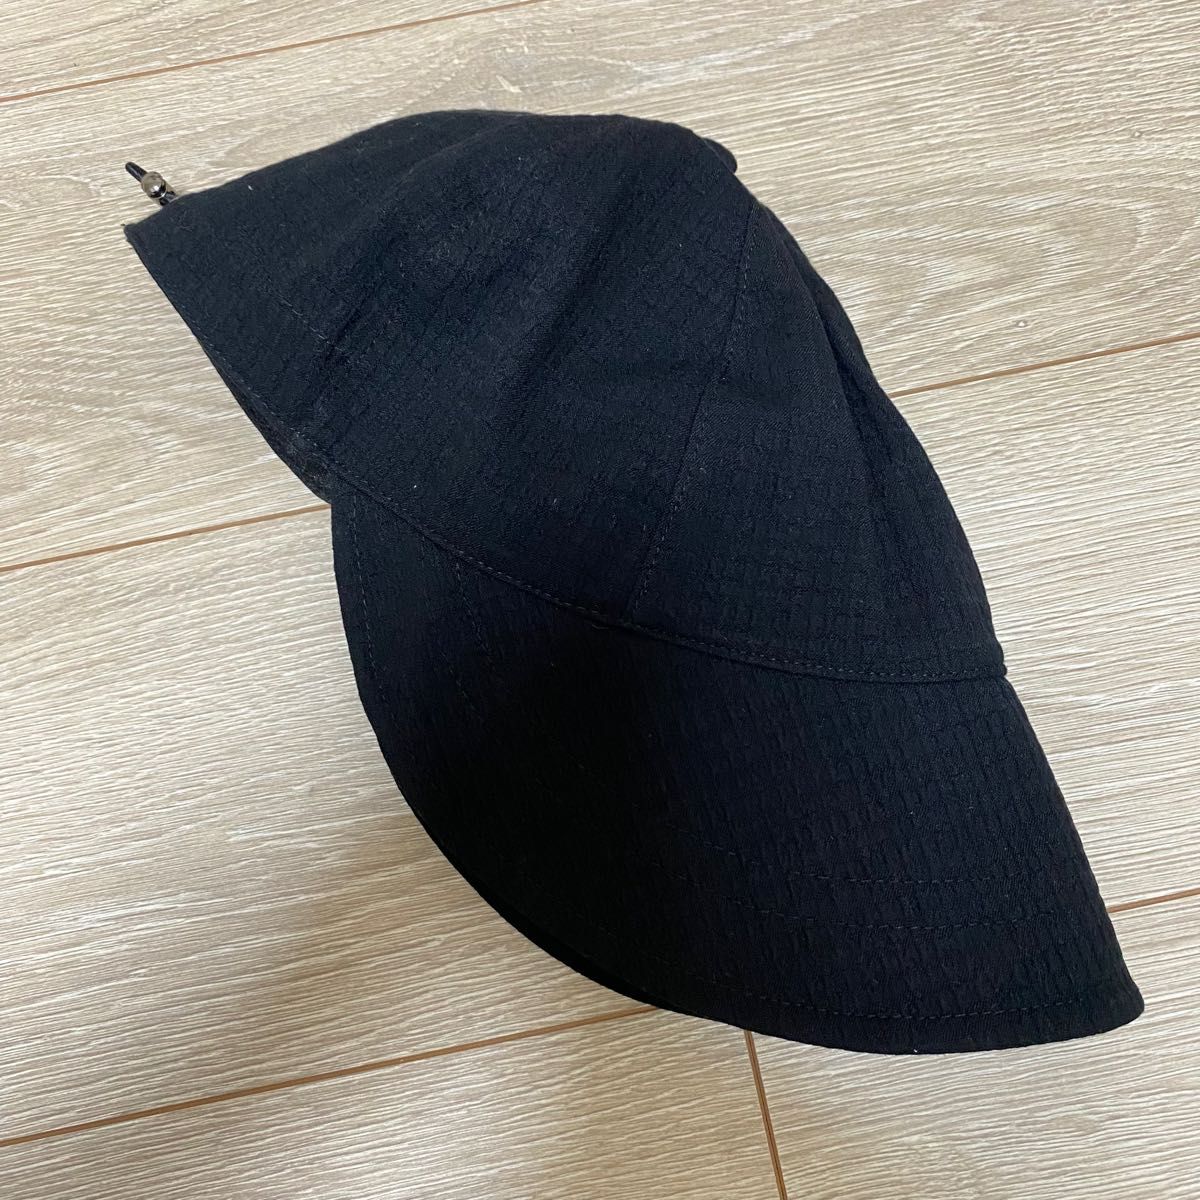 キャップ レディース つば広 帽子 UVカット 韓国 夏 折りたたみ 調整 ママ キャスケット 紫外線対策 小顔 大きいサイズ